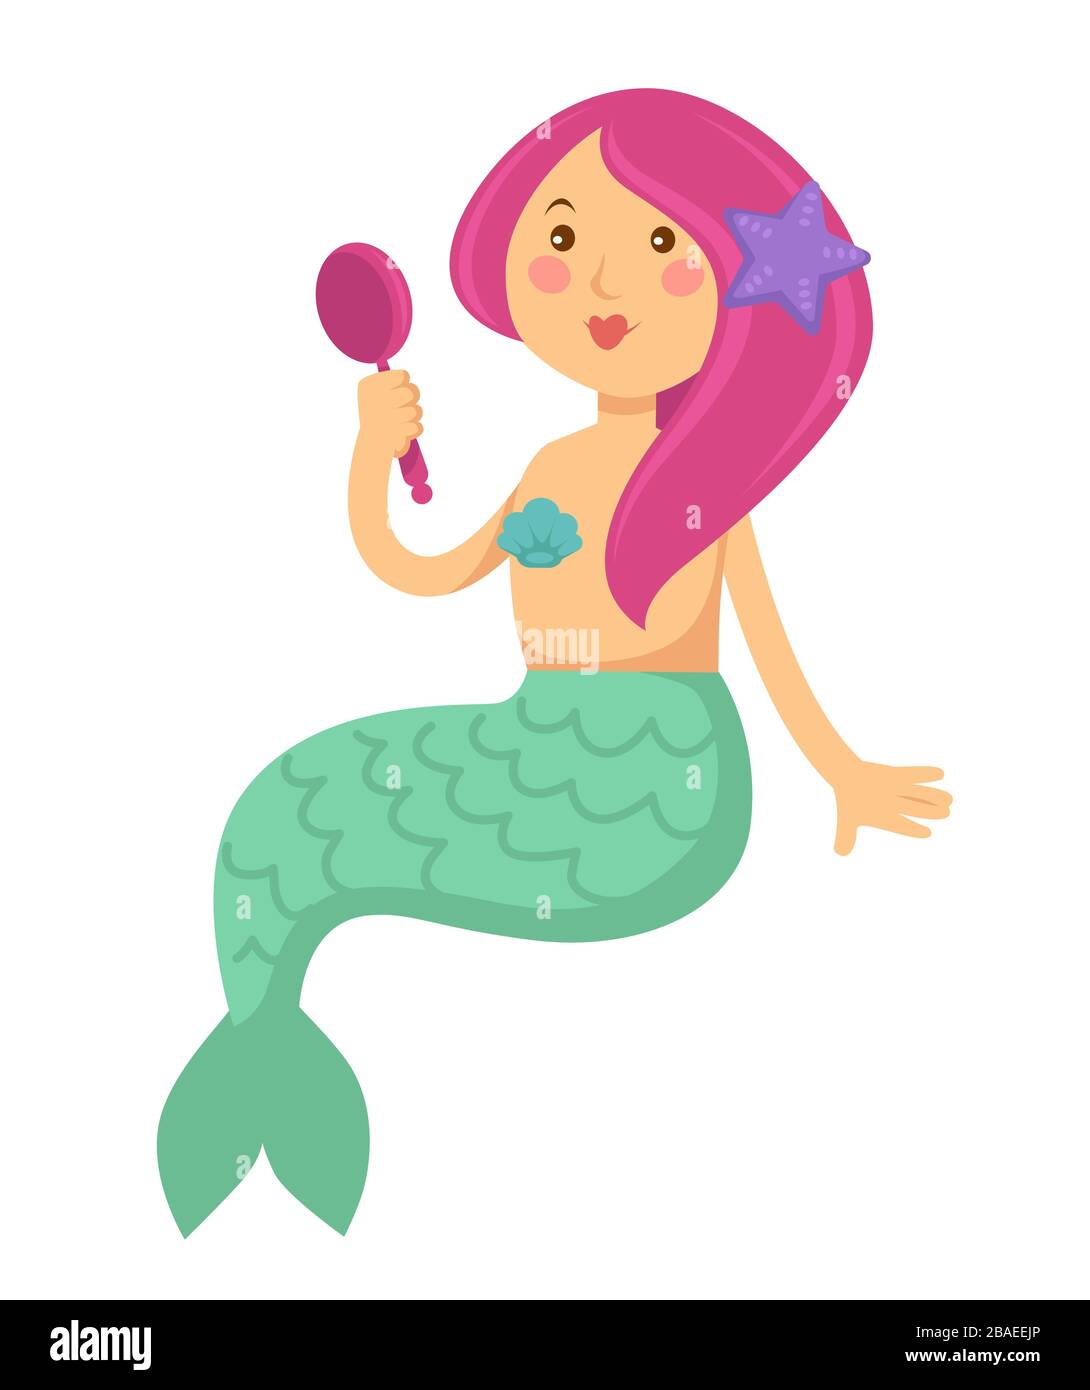 Personaggio Mermaid cartoon con capelli rossi che guardano in specchio Illustrazione Vettoriale